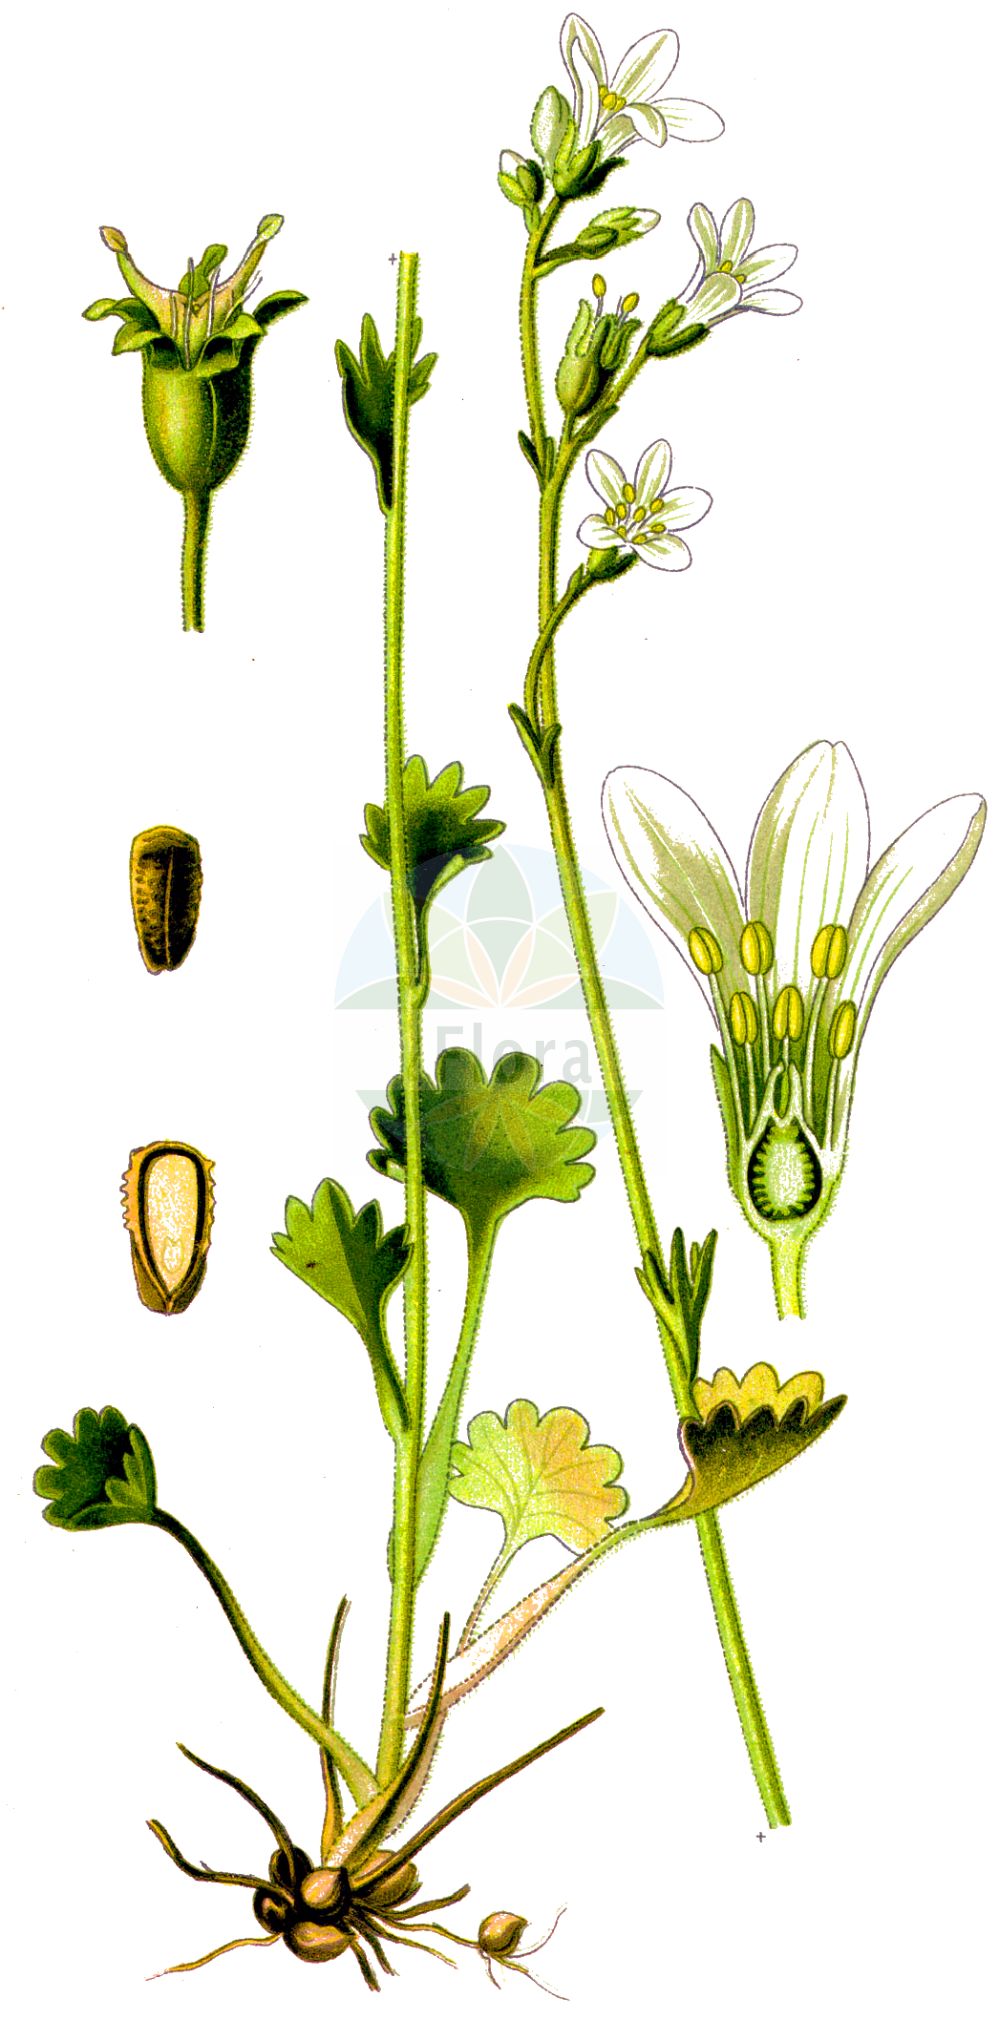 Historische Abbildung von Saxifraga granulata (Knöllchen-Steinbrech - Meadow Saxifrage). Das Bild zeigt Blatt, Bluete, Frucht und Same. ---- Historical Drawing of Saxifraga granulata (Knöllchen-Steinbrech - Meadow Saxifrage). The image is showing leaf, flower, fruit and seed.(Saxifraga granulata,Knöllchen-Steinbrech,Meadow Saxifrage,Saxifraga granulata,Knoellchen-Steinbrech,Koernchen-Steinbrech,Meadow Saxifrage,Bulbous Saxifrage,Fair Maids Of France,Saxifraga,Steinbrech,Saxifrage,Saxifragaceae,Steinbrechgewächse,Saxifrage family,Blatt,Bluete,Frucht,Same,leaf,flower,fruit,seed,Thomé (1885))